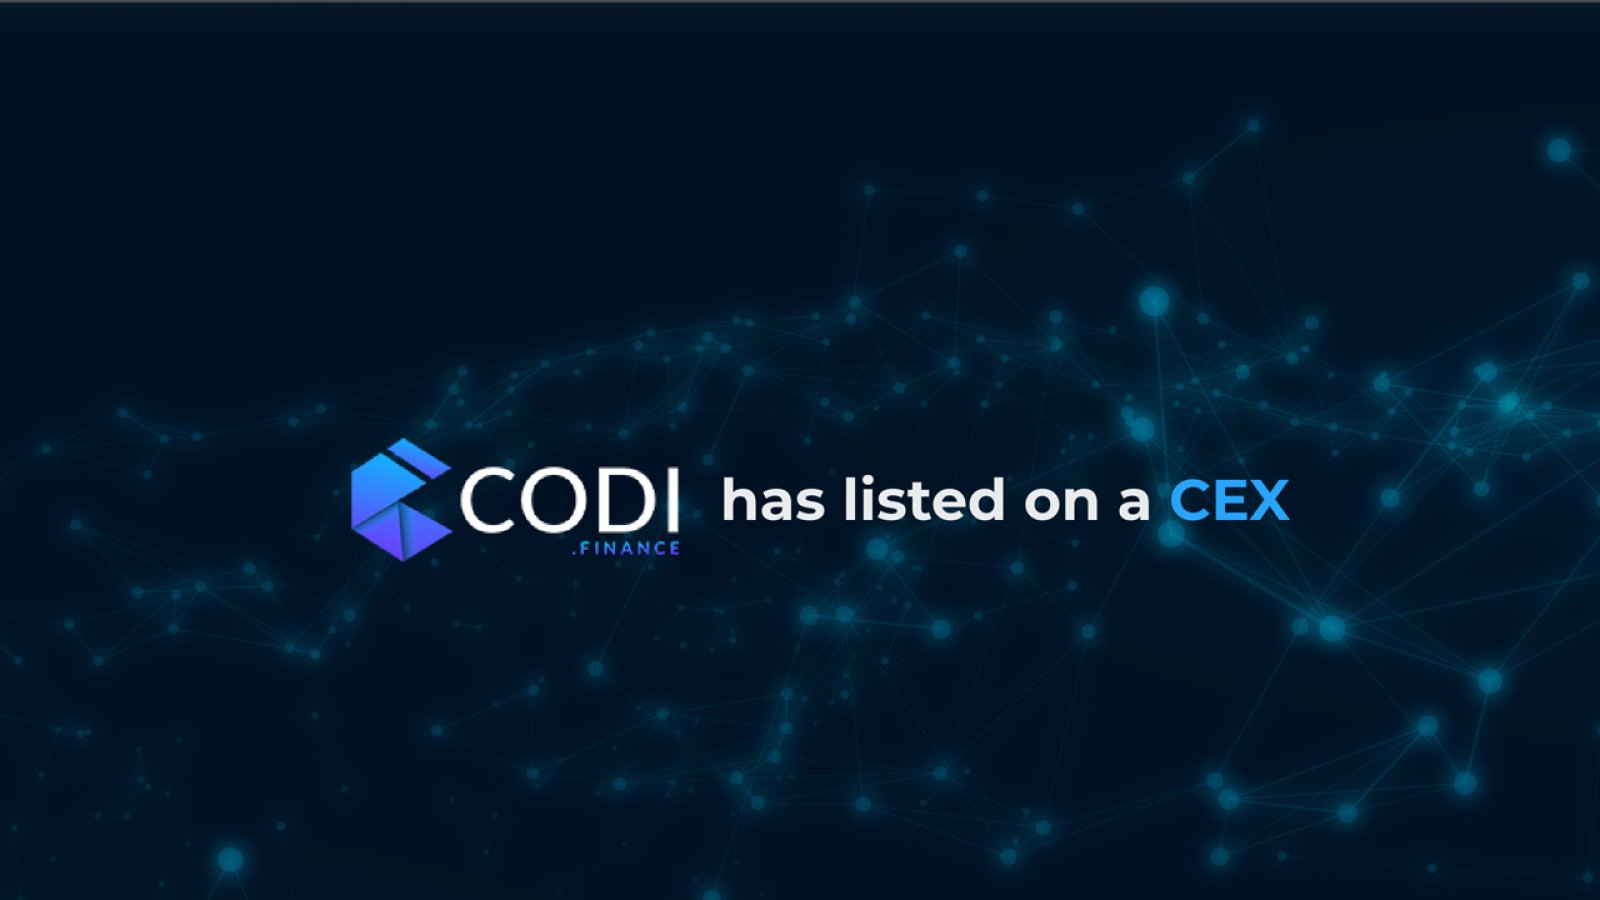 CODI Finance Announces CEX Listing